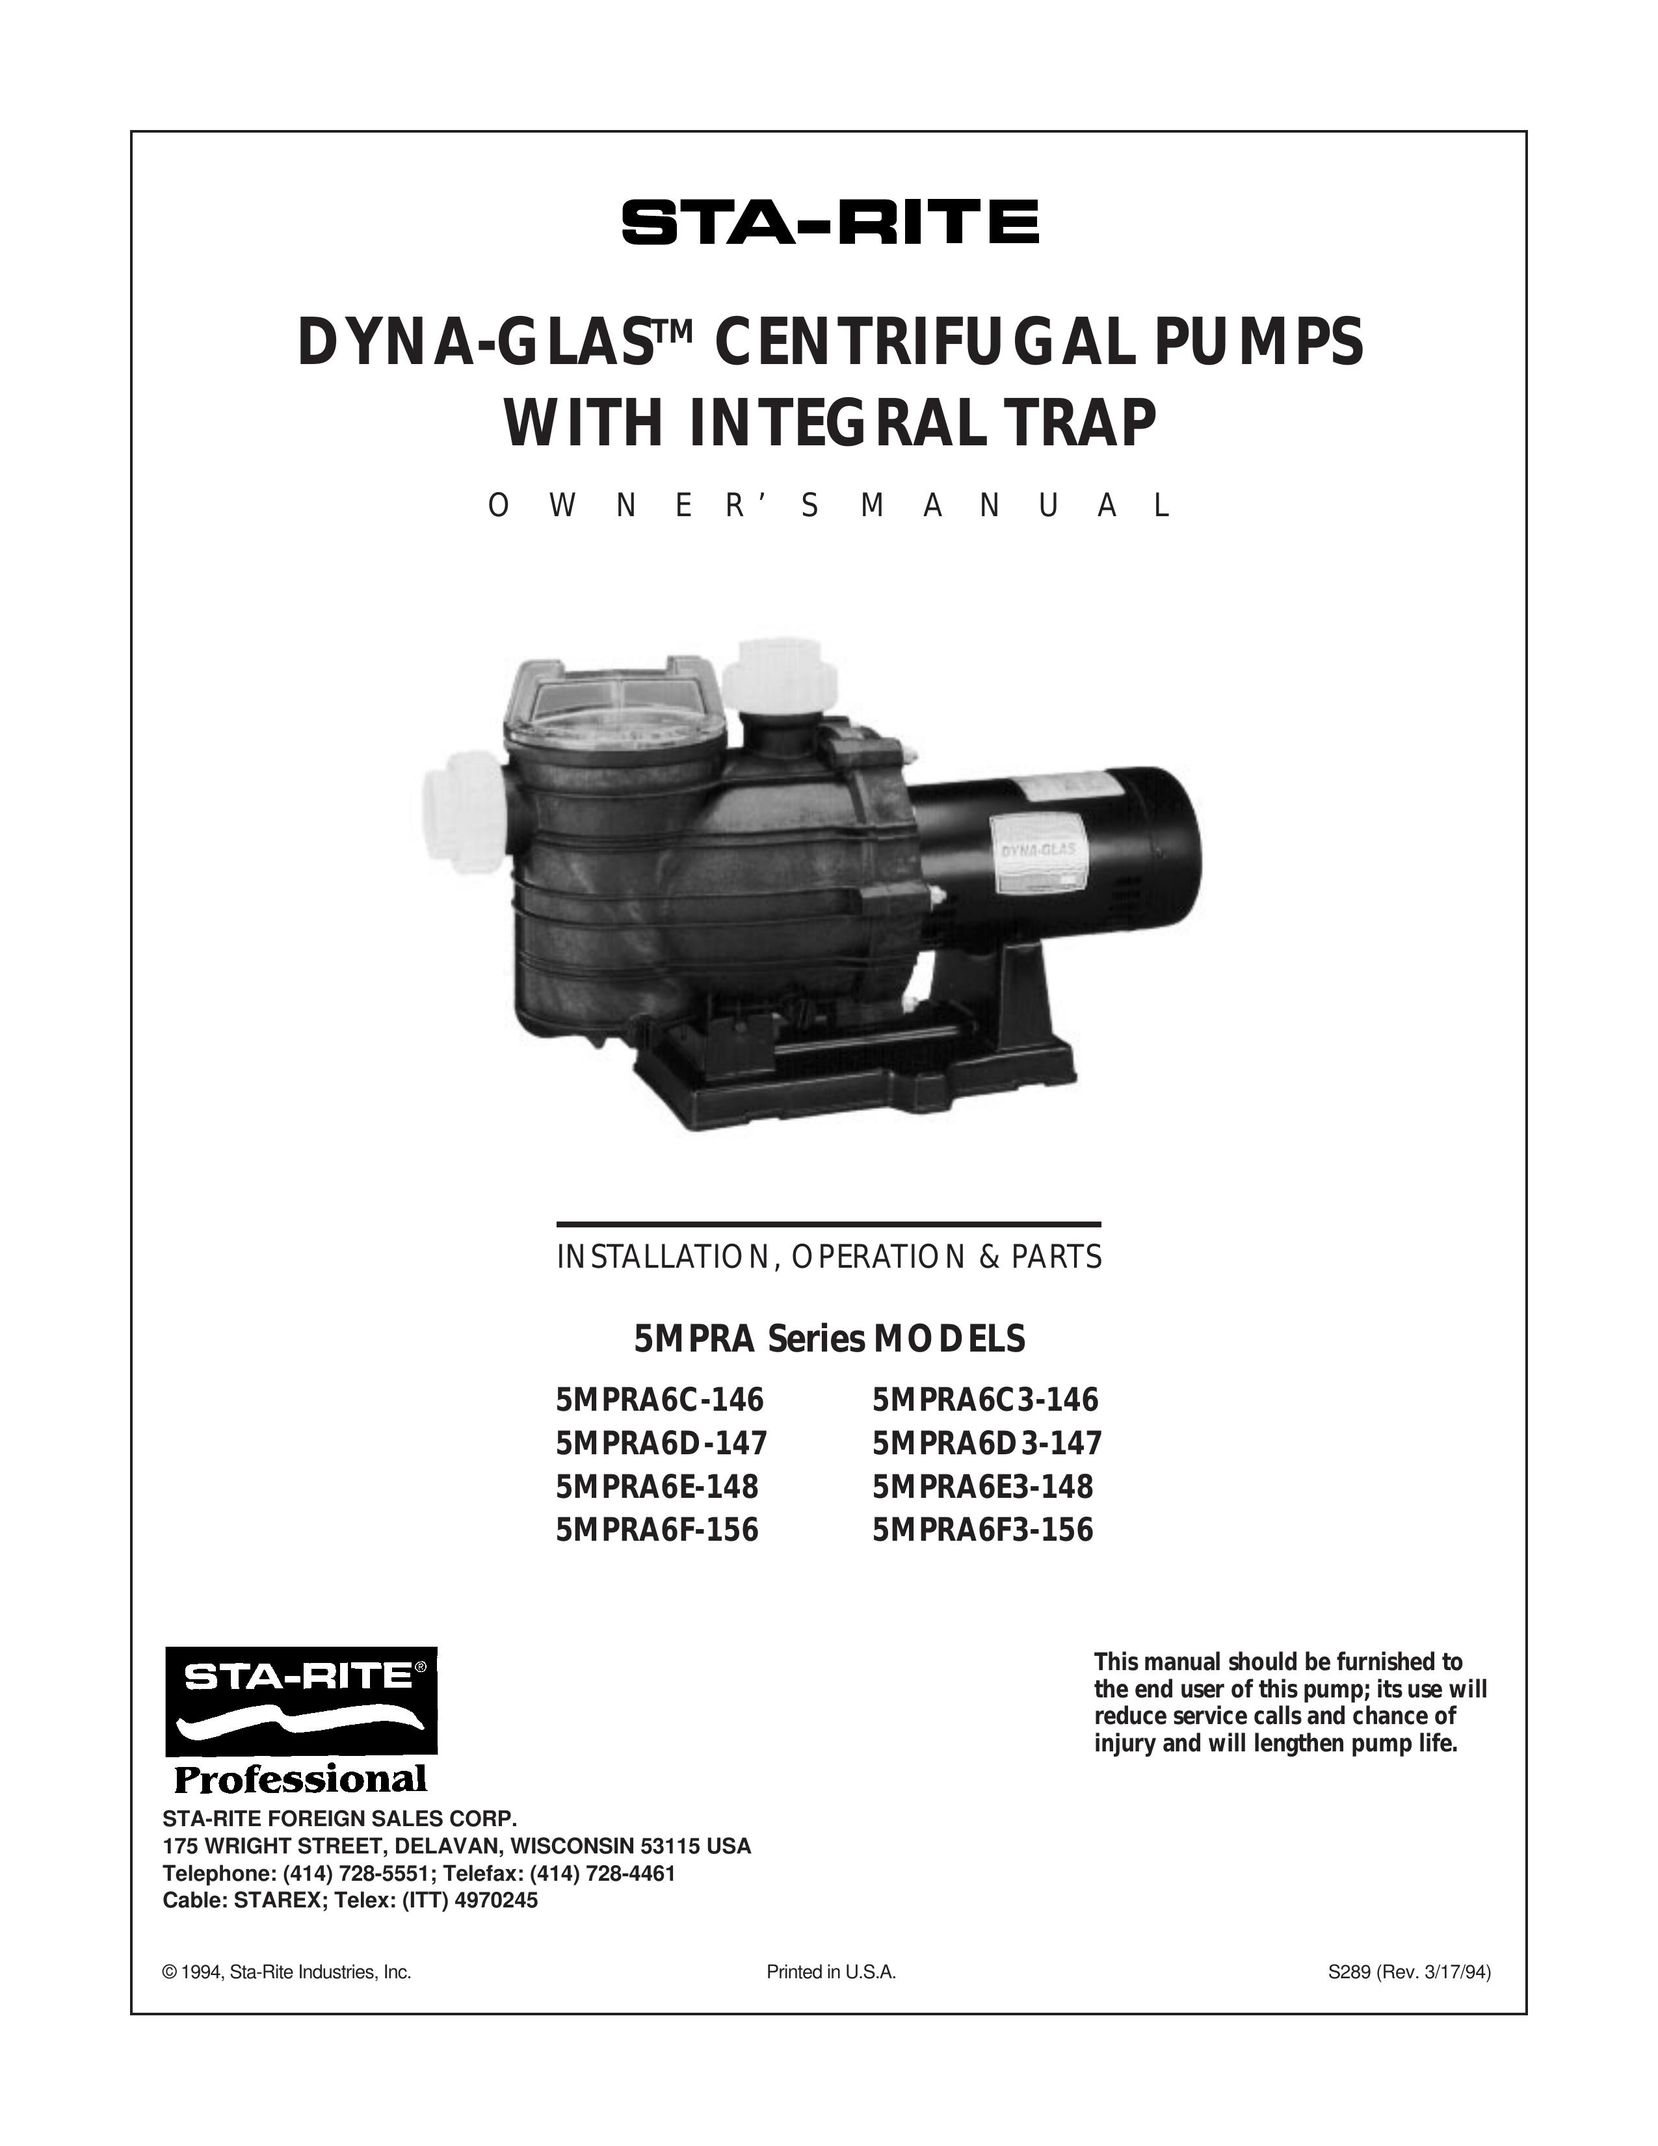 Mad Catz 5MPRA6F3-156 Water Pump User Manual